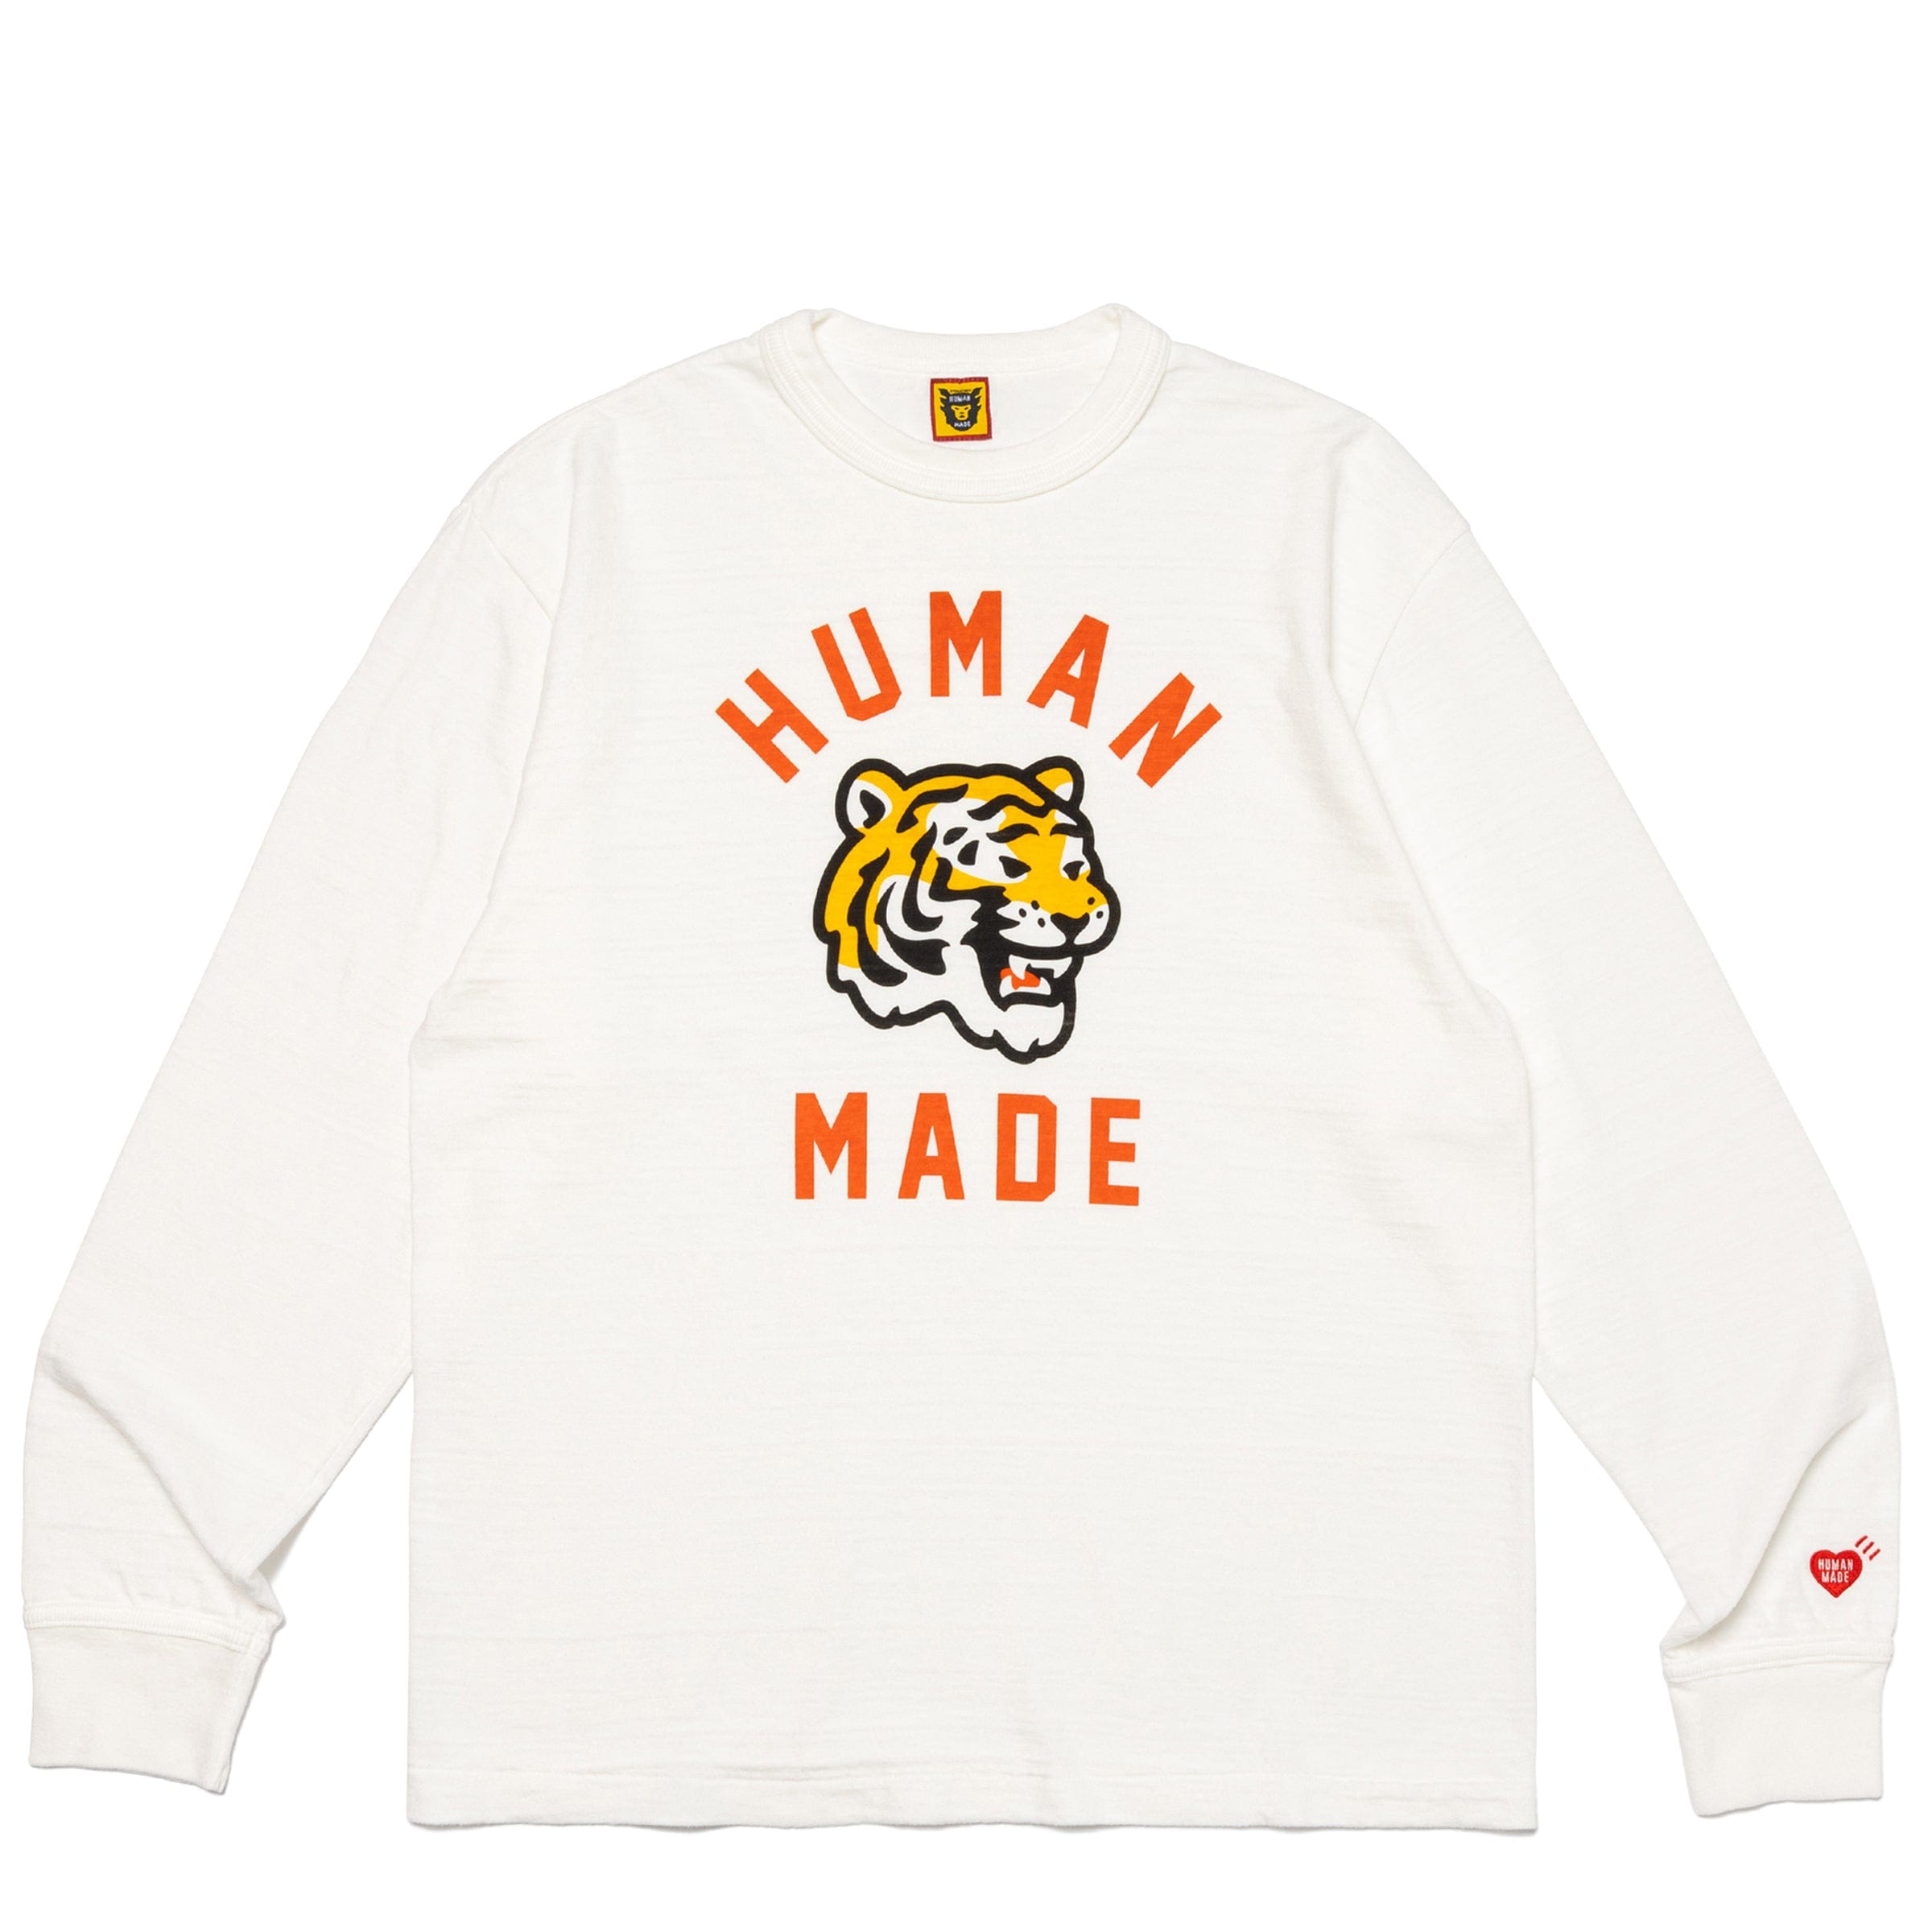 販売安心HUMAN MADE COLOR T-SHIRT Tシャツ/カットソー(半袖/袖なし)